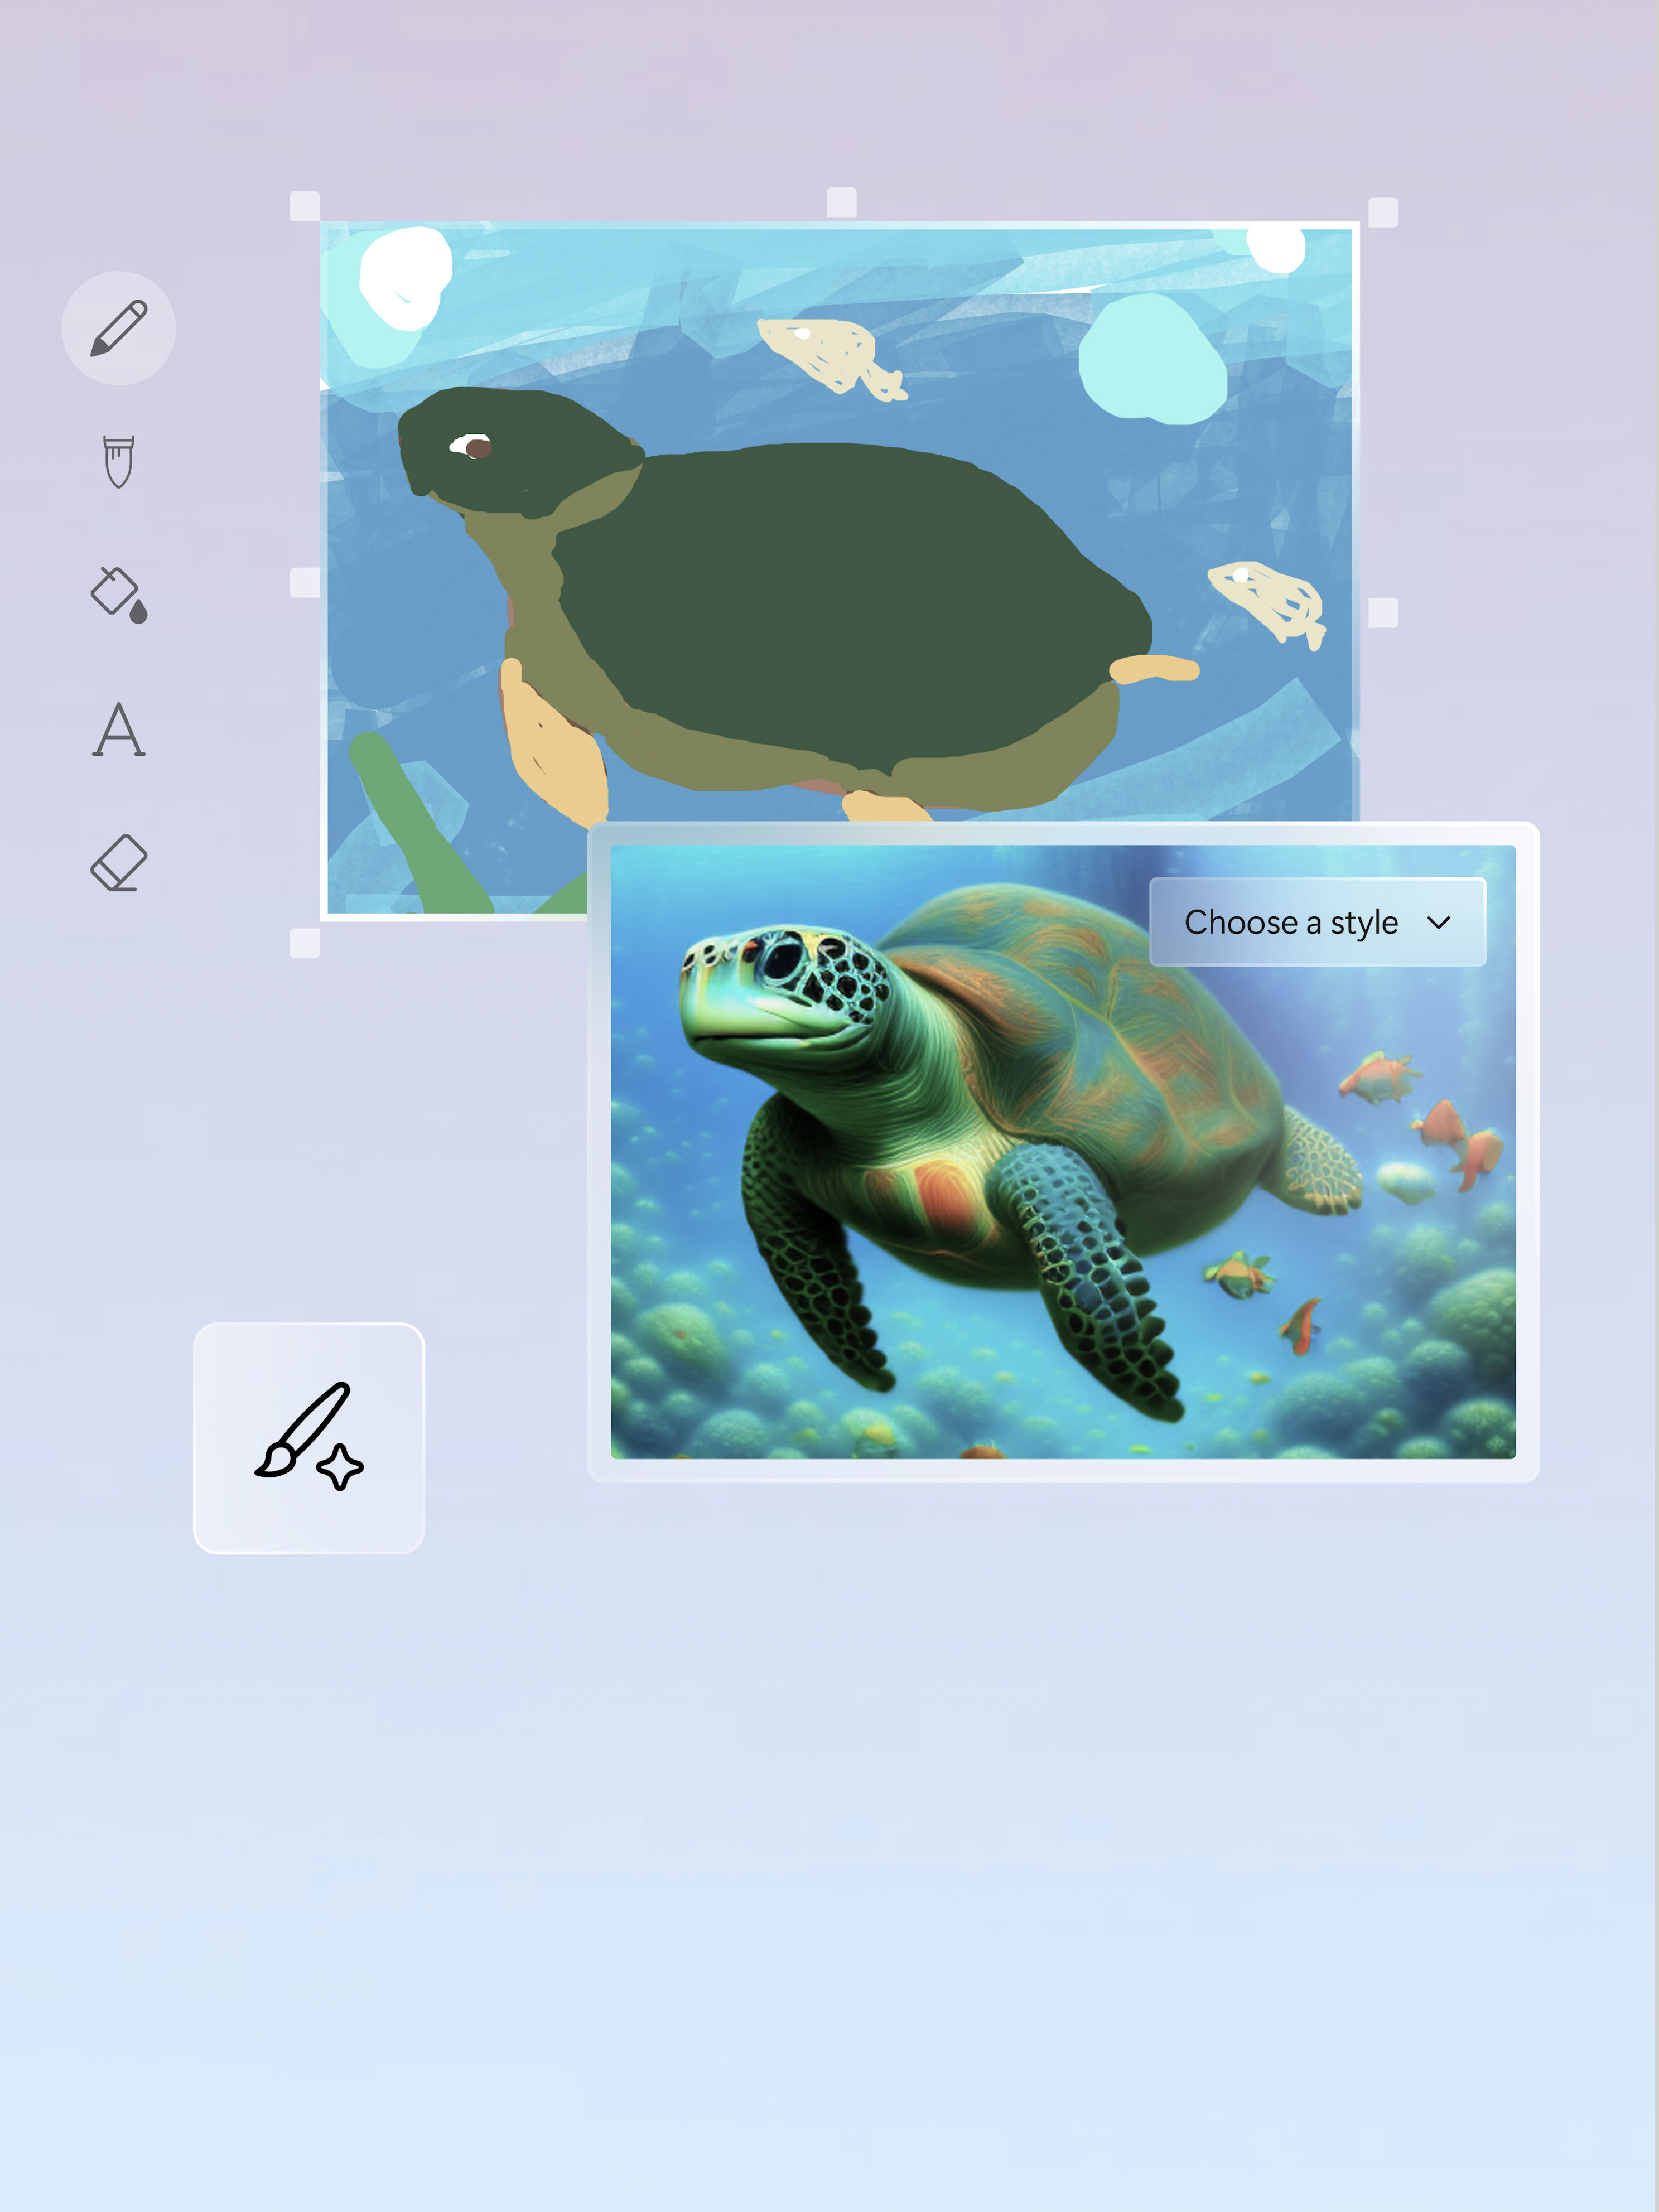 Un rendering artistico e un'immagine di una tartaruga